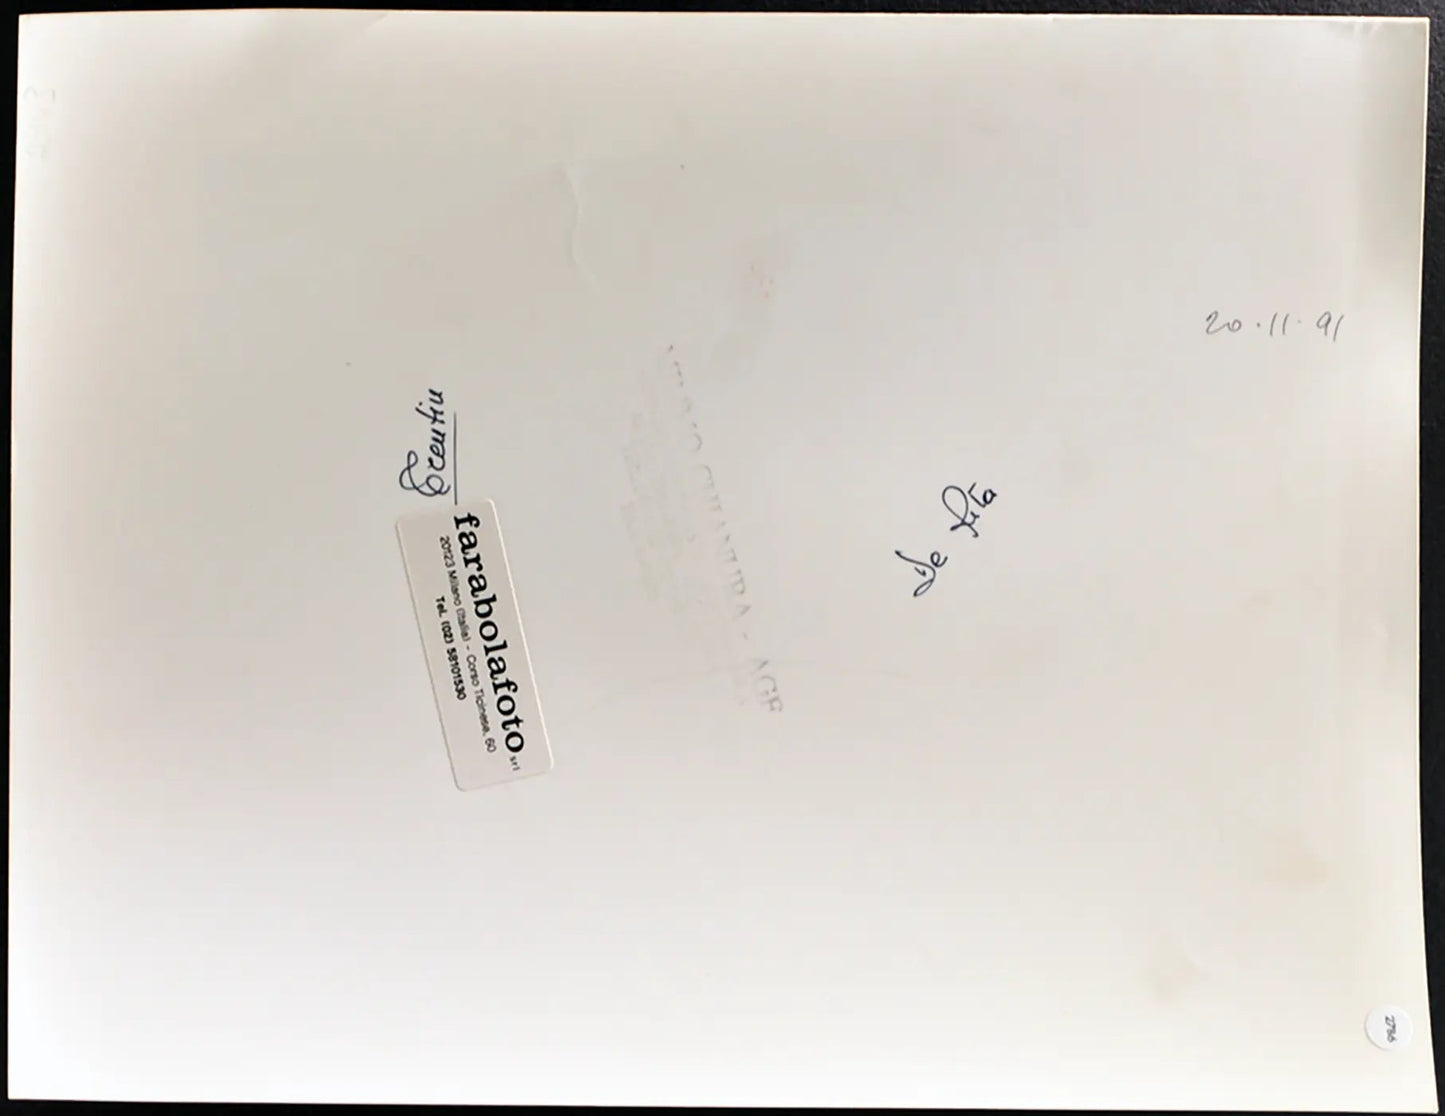 De Rita e Trentin 1991 Ft 2786 - Stampa 24x30 cm - Farabola Stampa ai sali d'argento